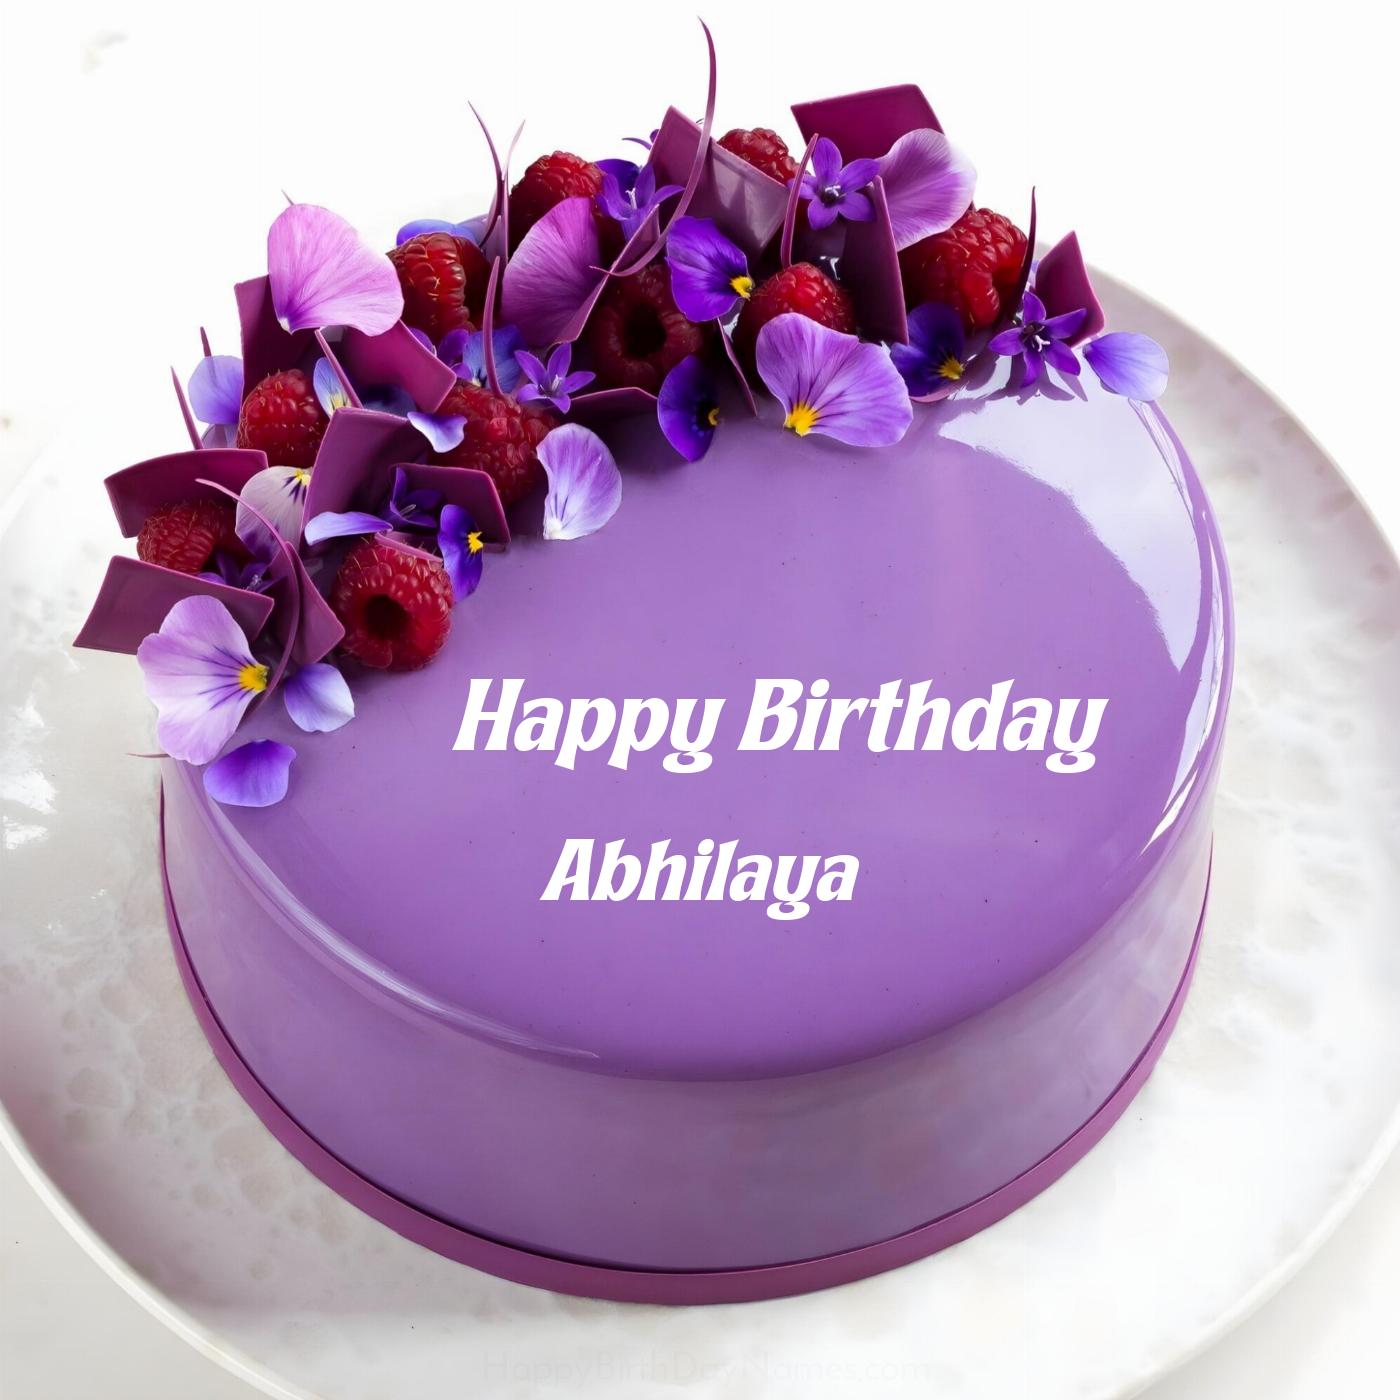 Happy Birthday Abhilaya Violet Raspberry Cake